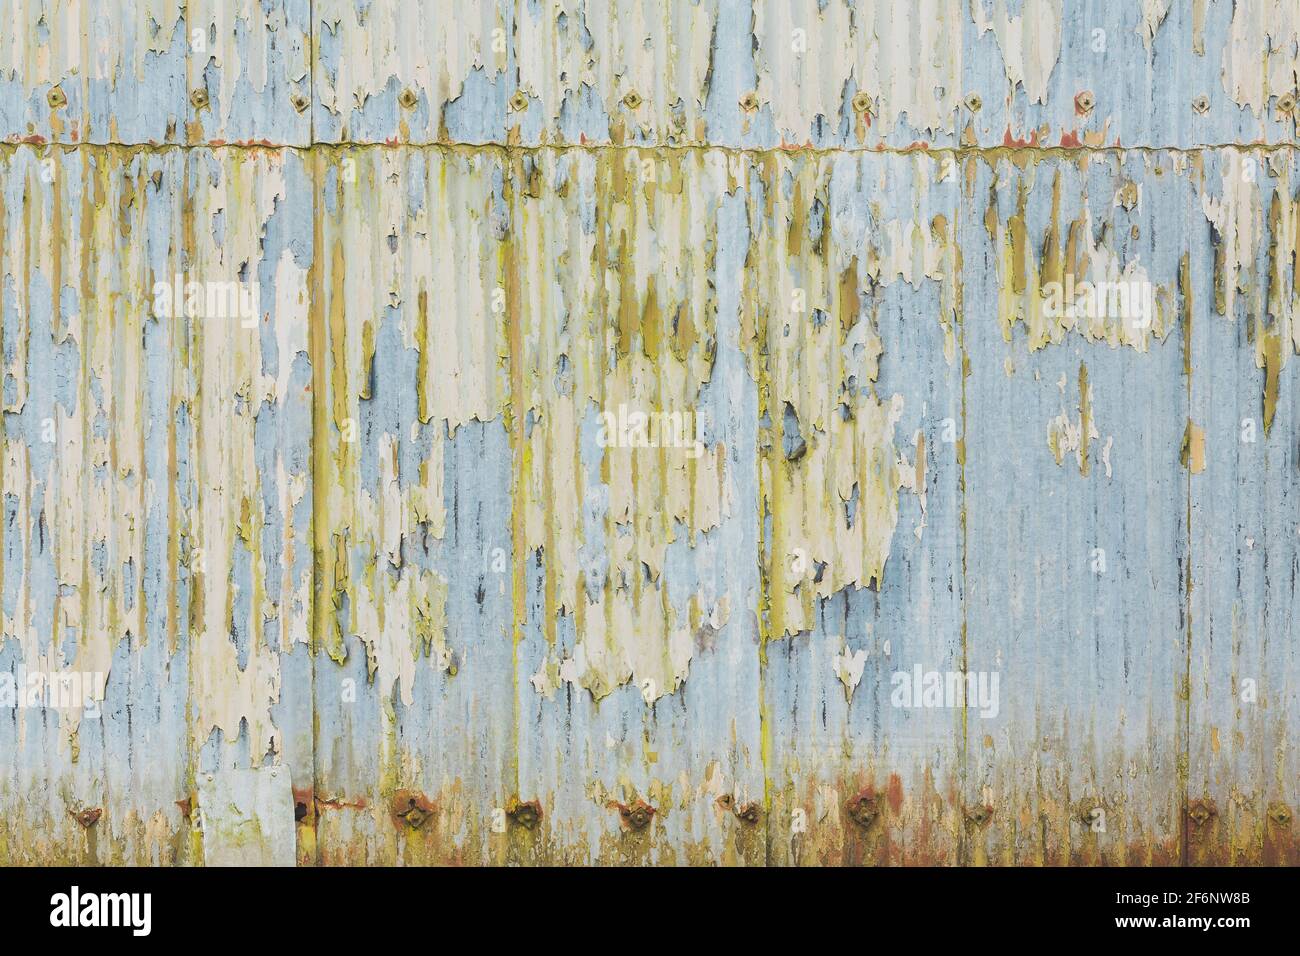 Tetto in ferro corrugato, fogli di metallo corrugato con vernice da peeling. Grunge texture, pattern o background, UK Foto Stock